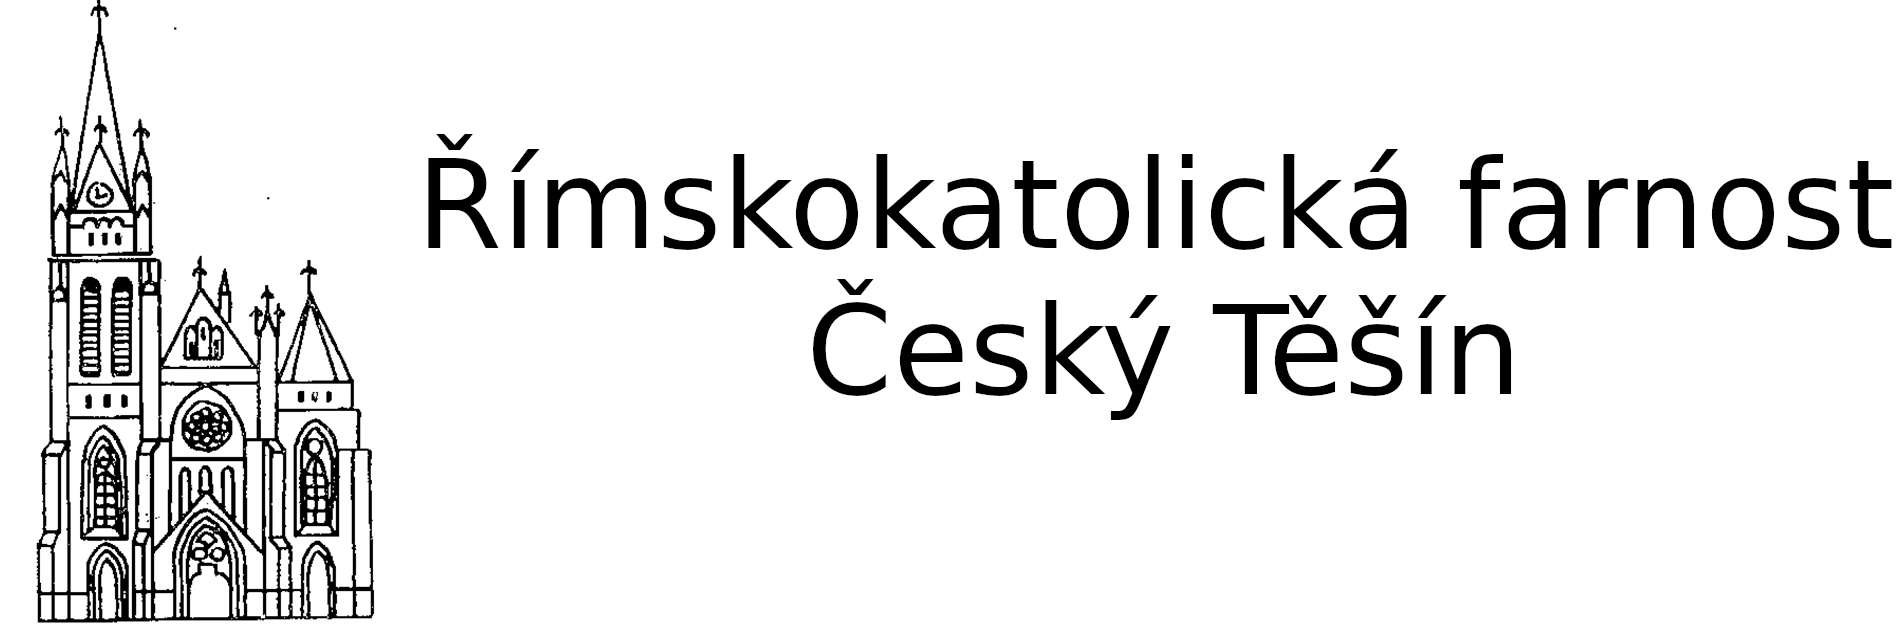 Logo Kalendář - Římskokatolická farnost Český Těšín